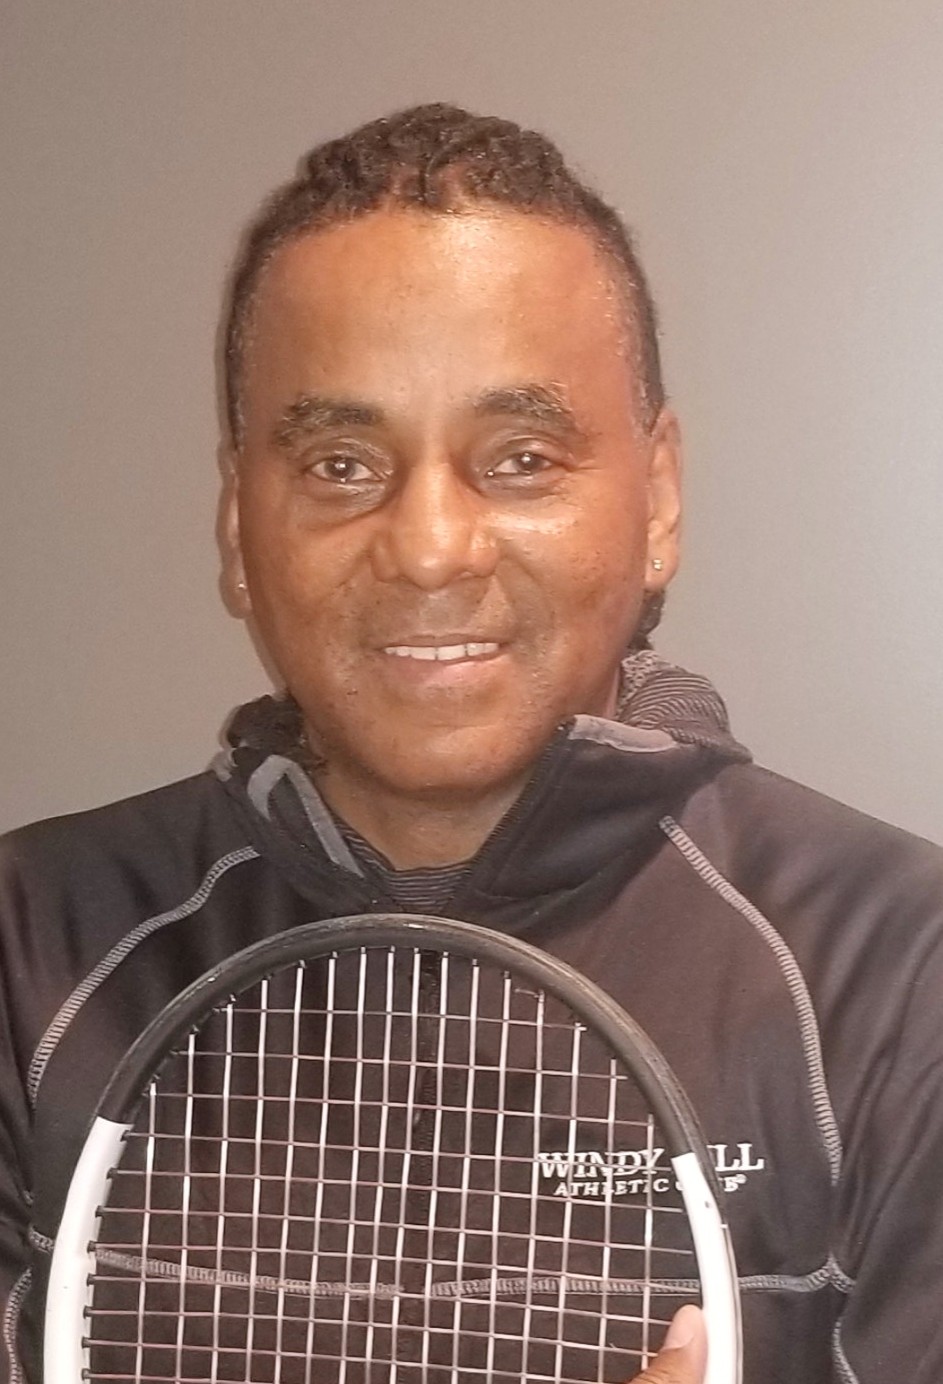 Ted N. teaches tennis lessons in Atlanta, GA